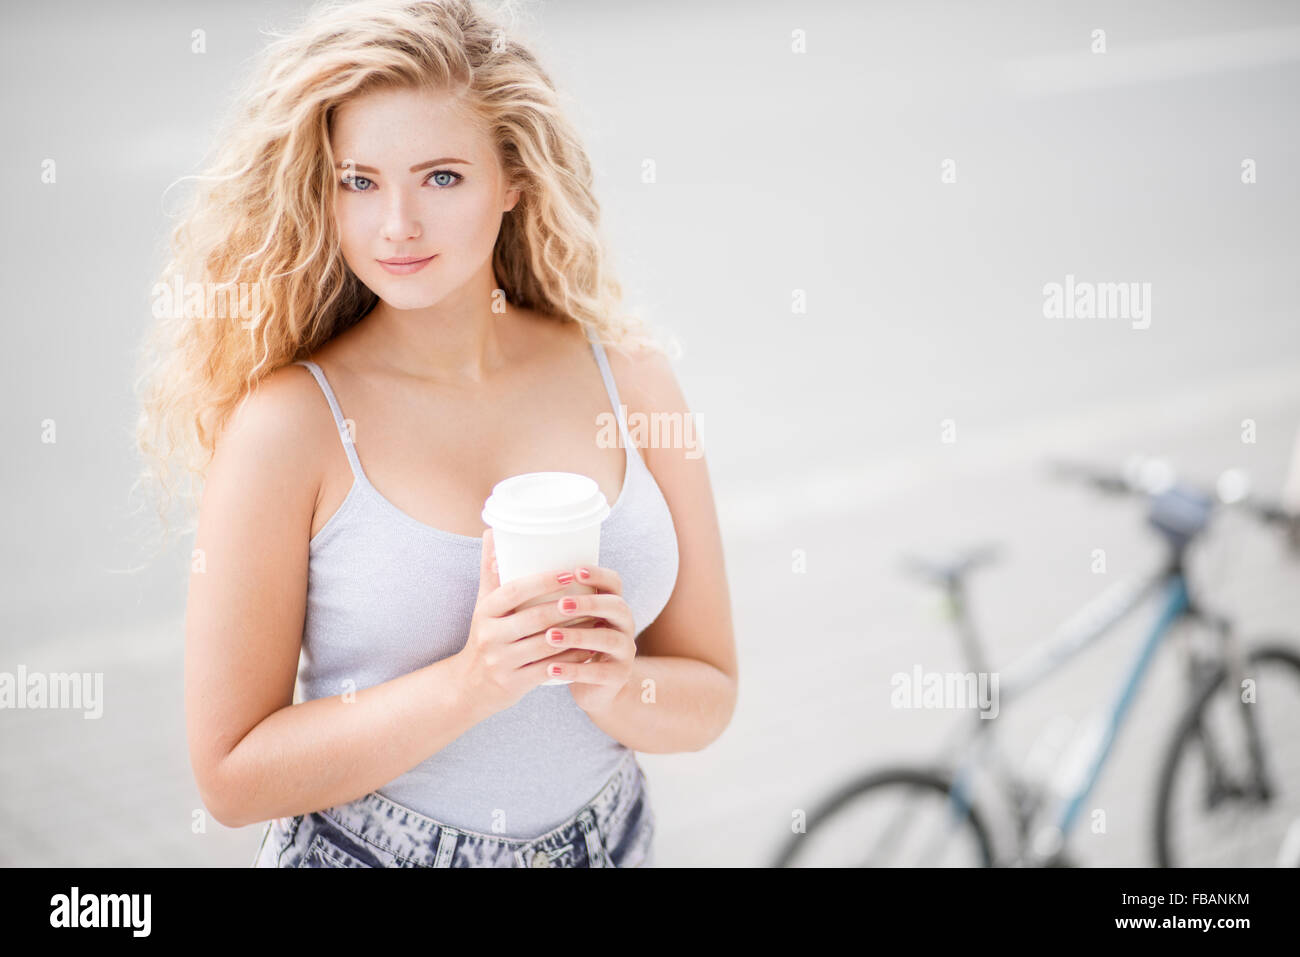 Glückliche junge Frau mit langen lockigen Haaren, ein Take away Kaffeetasse halten und gegen leere Straße und Stadt-Fahrrad-Hintergrund. Stockfoto